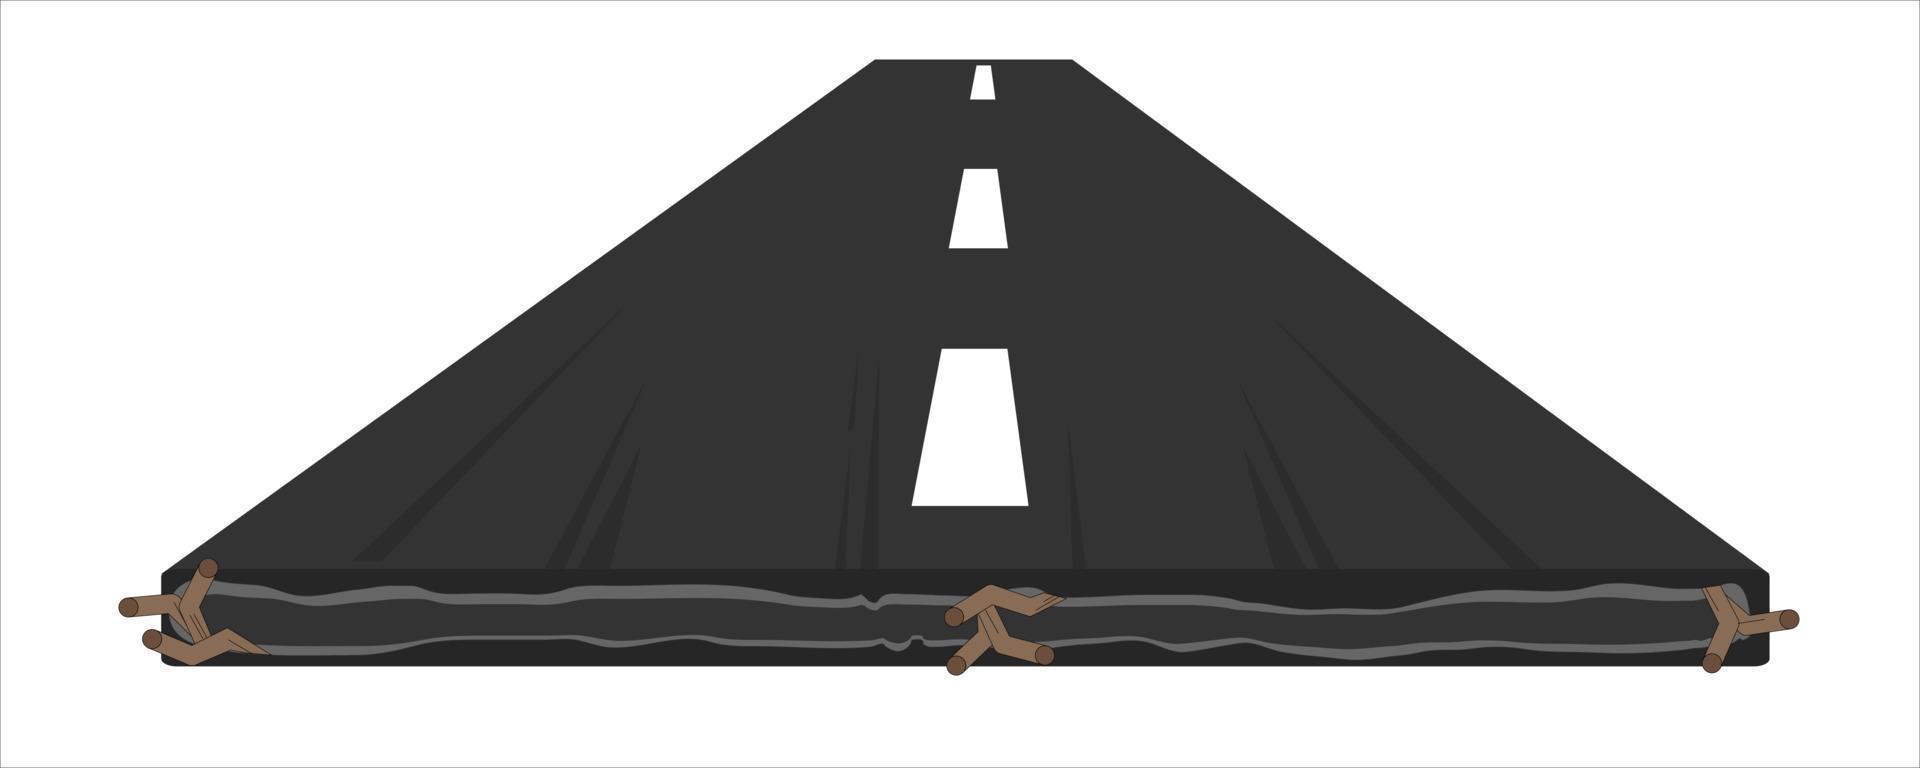 ilustração em vetor rodovia vista frontal